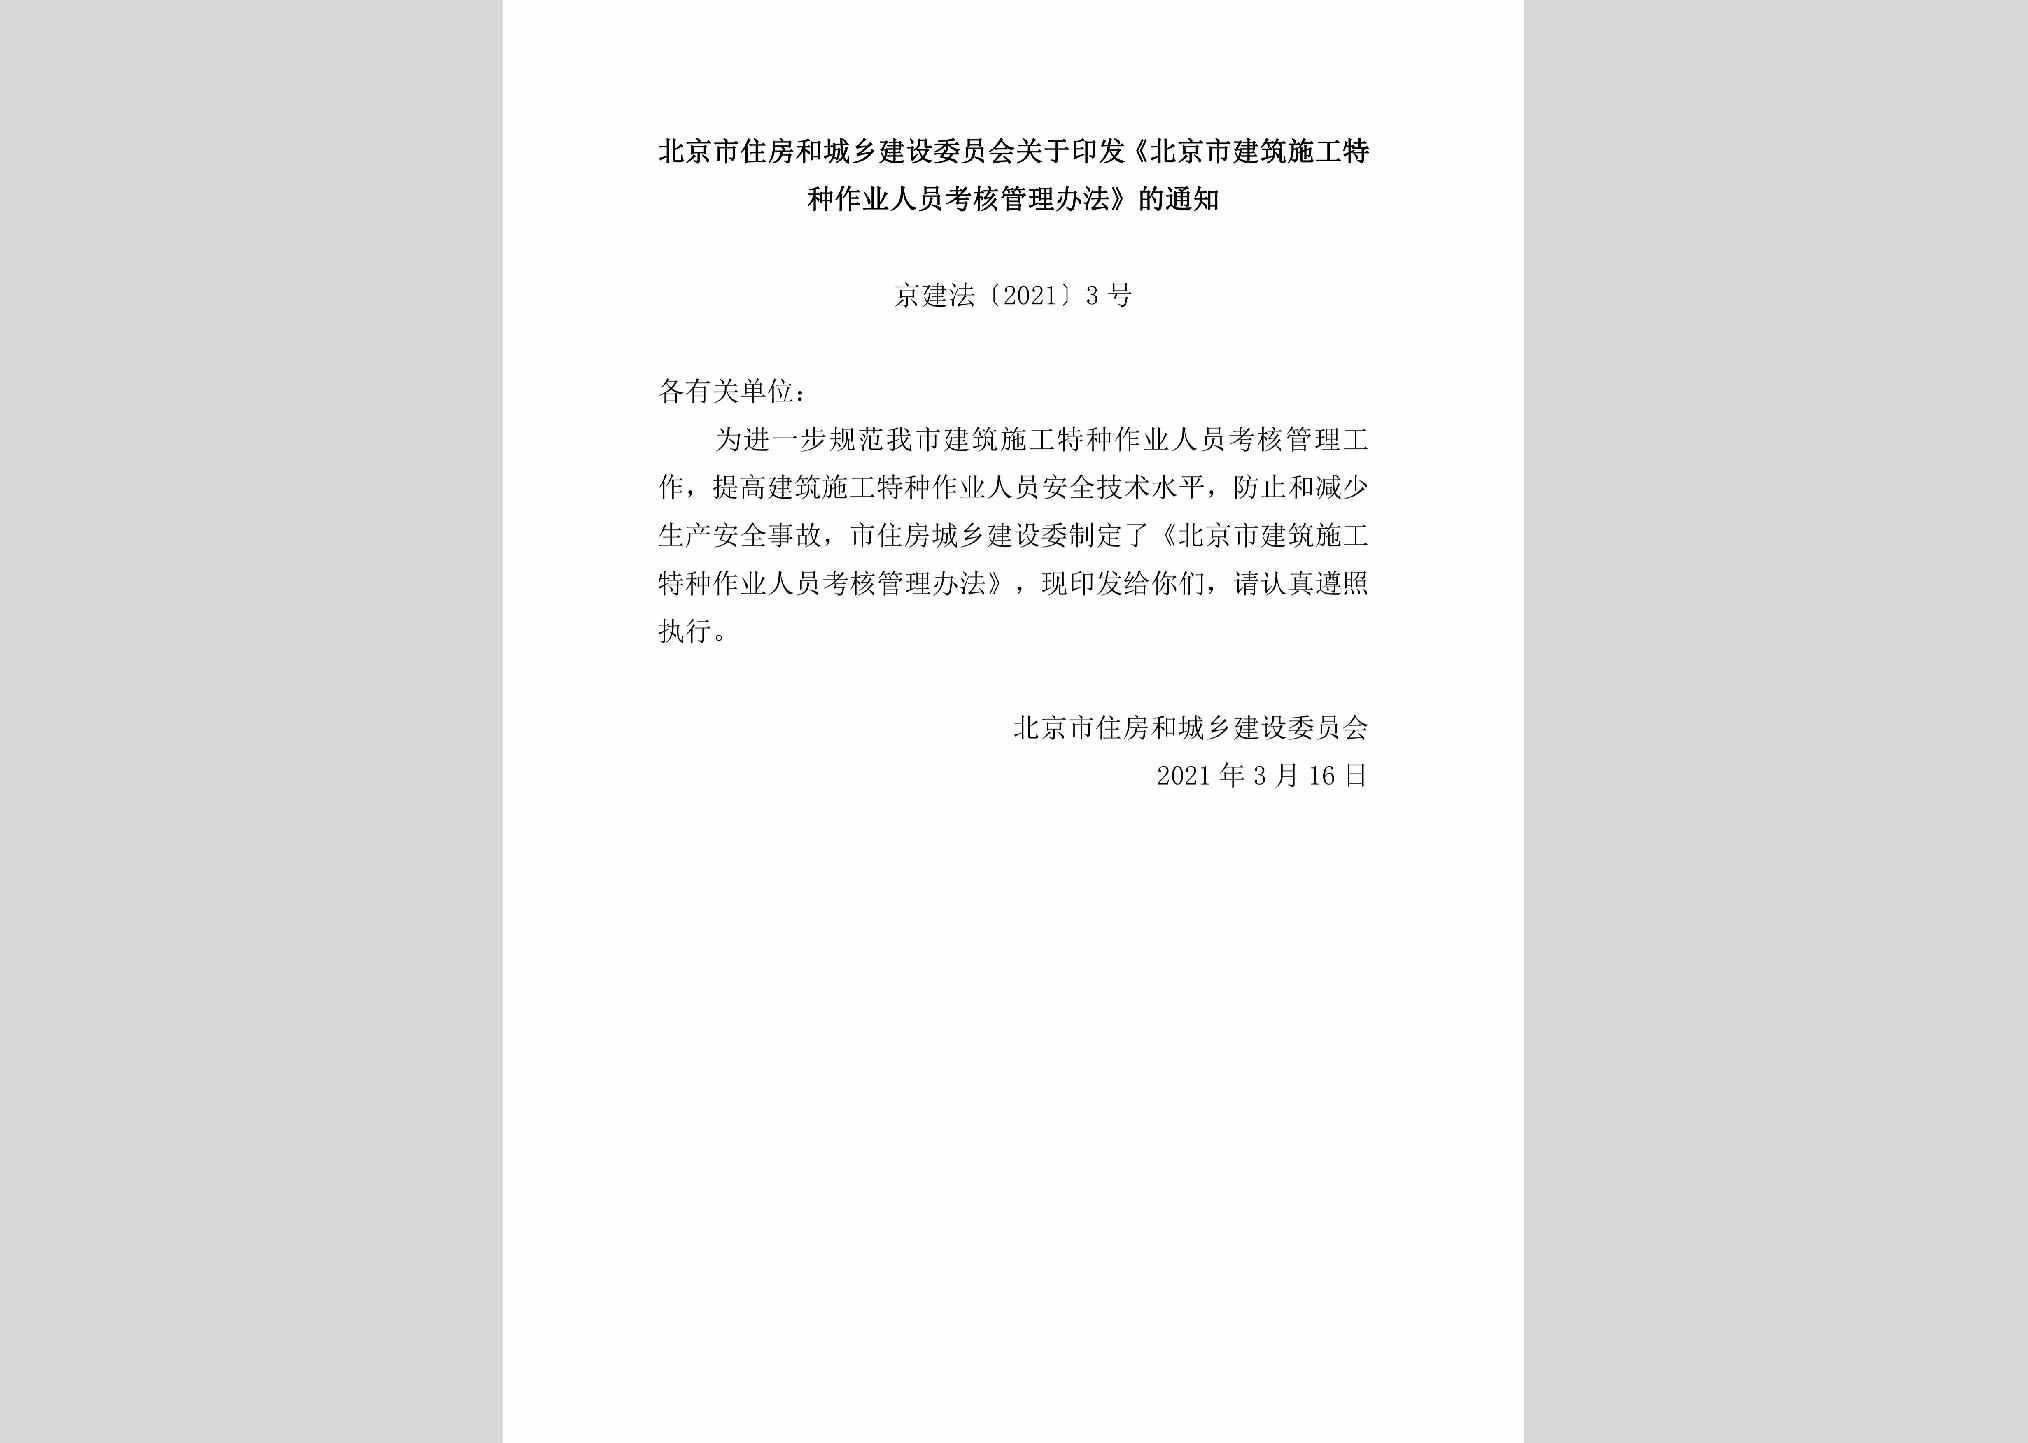 京建法[2021]3号：北京市住房和城乡建设委员会关于印发《北京市建筑施工特种作业人员考核管理办法》的通知